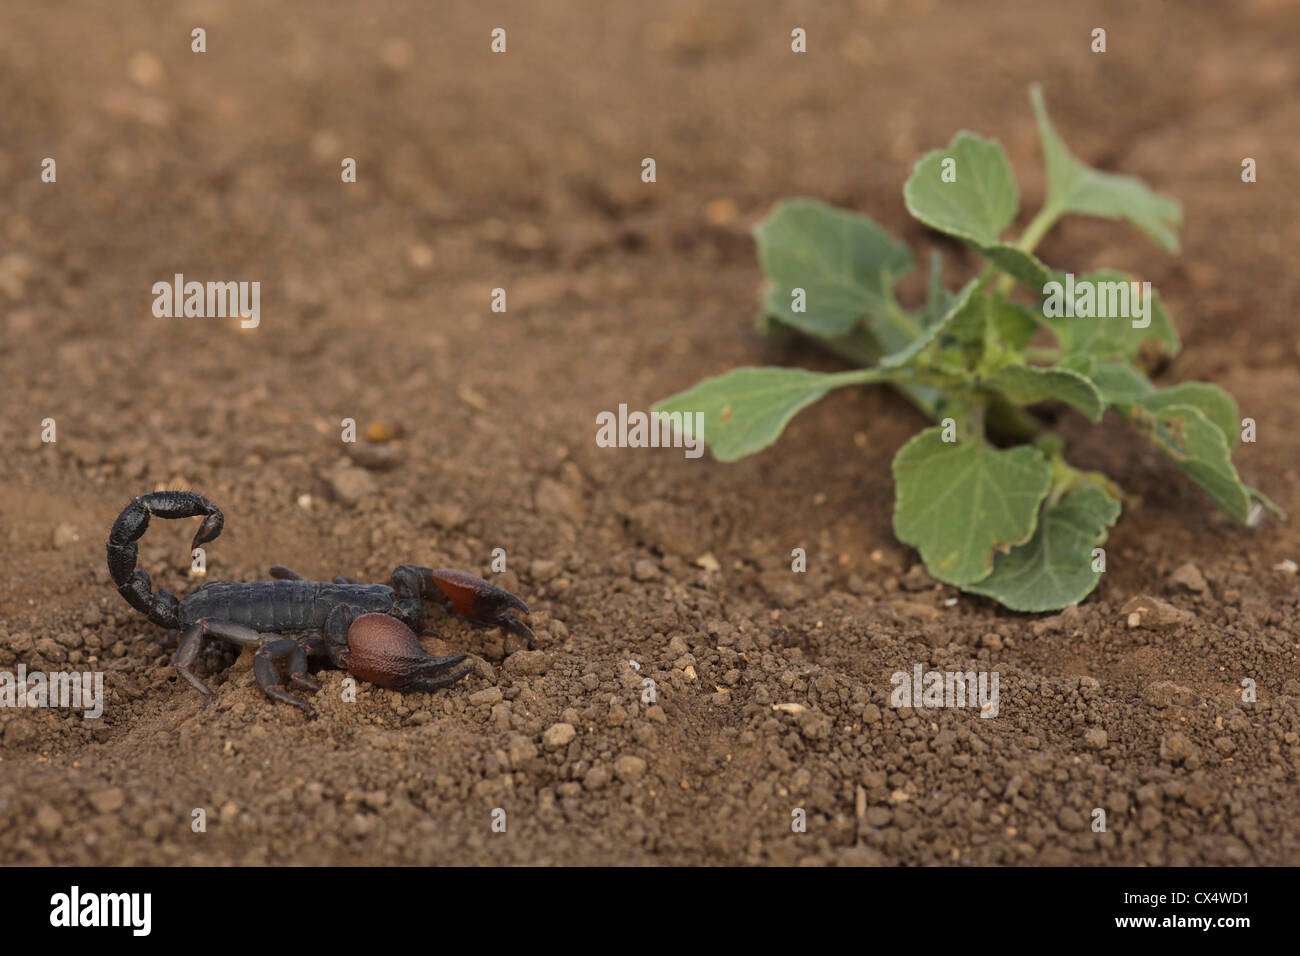 Israeli Black Scorpion (Scorpio maurus) Israel Summer August Stock Photo